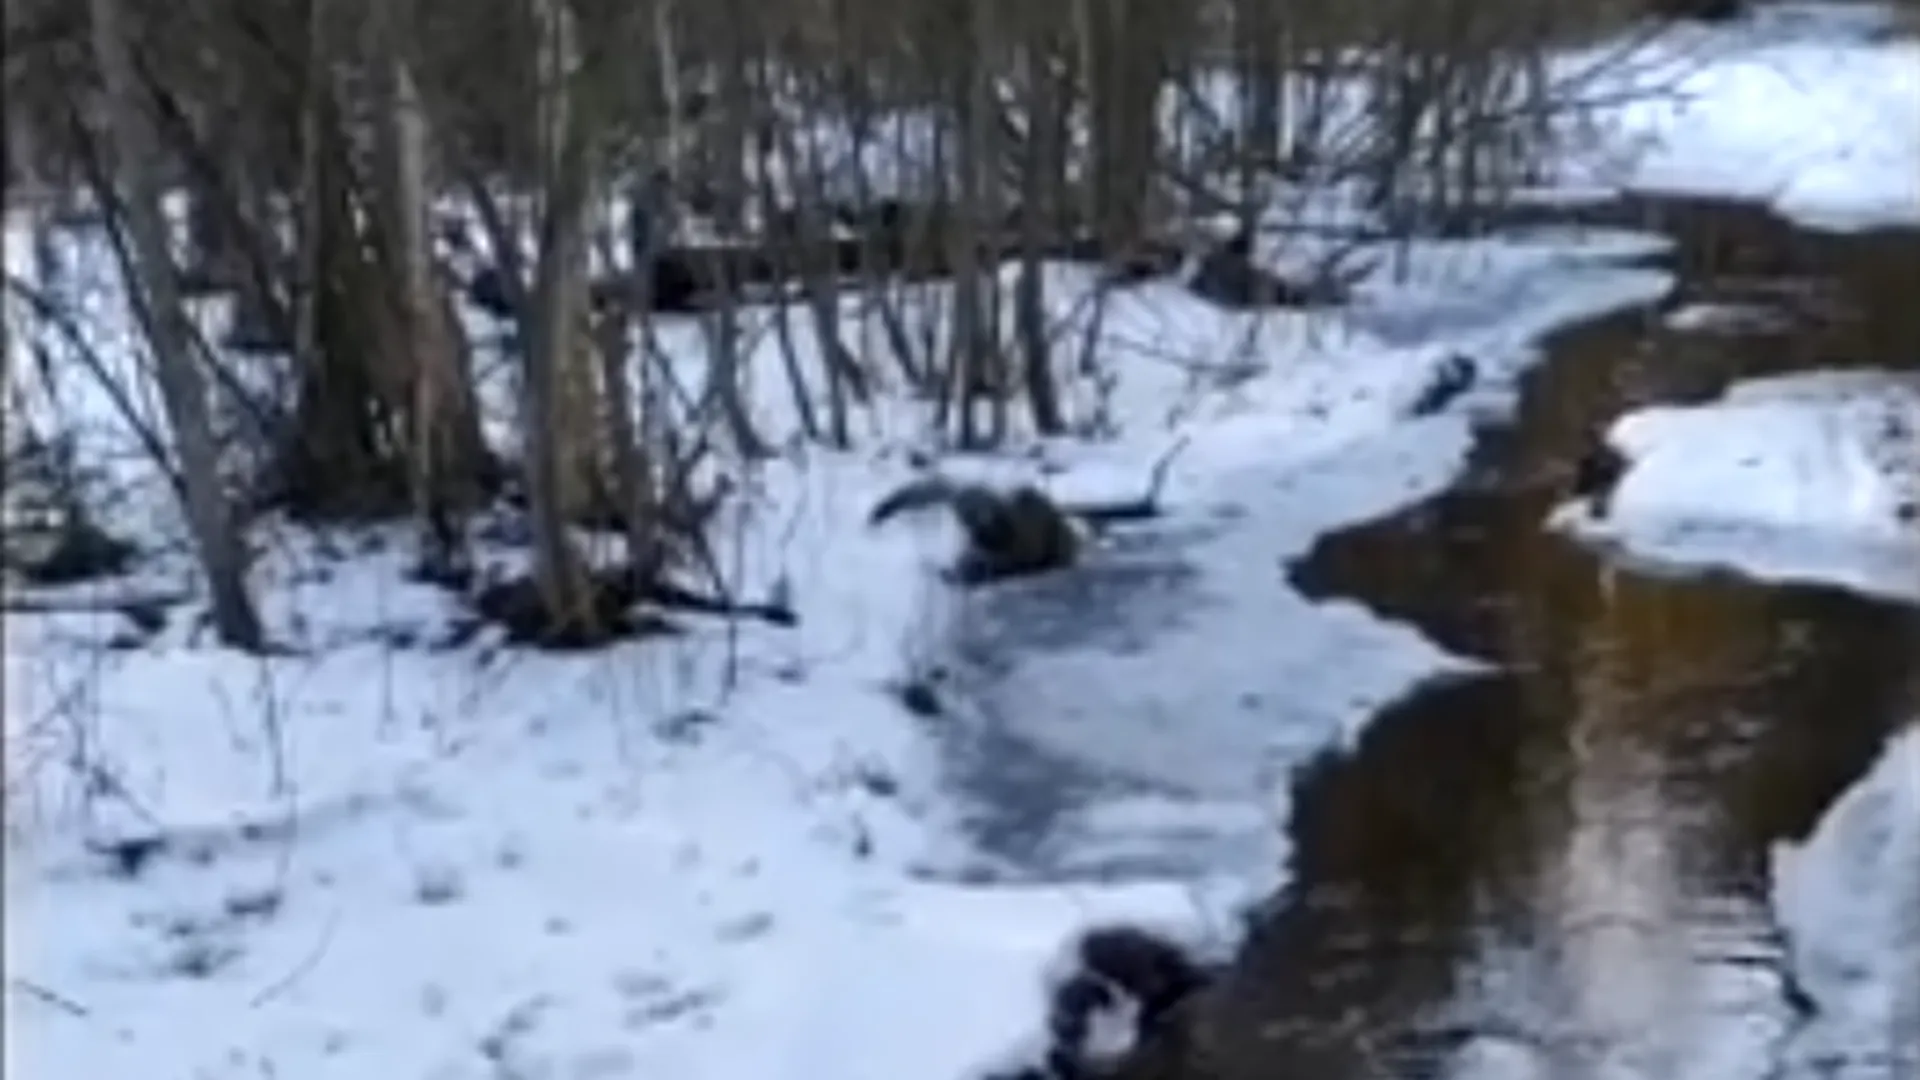 Реку из канализационных вод обнаружили в лесу в Орехово-Зуево